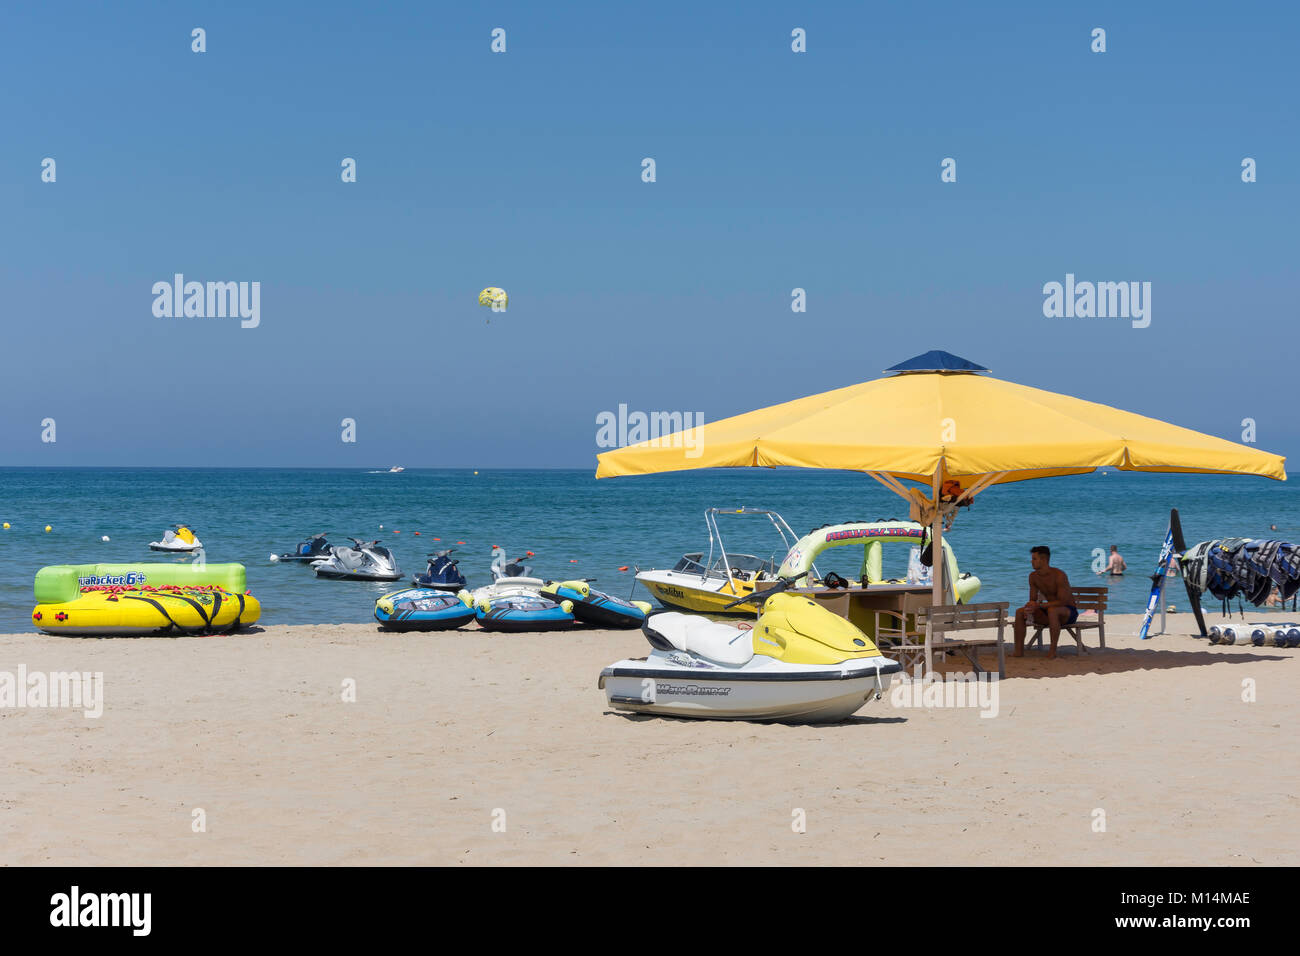 Deportes acuáticos en la playa, la playa de Ikarus Ikarus, Rethymnon (Rethimno Rethimno), región, Creta, Grecia (Creta) Foto de stock